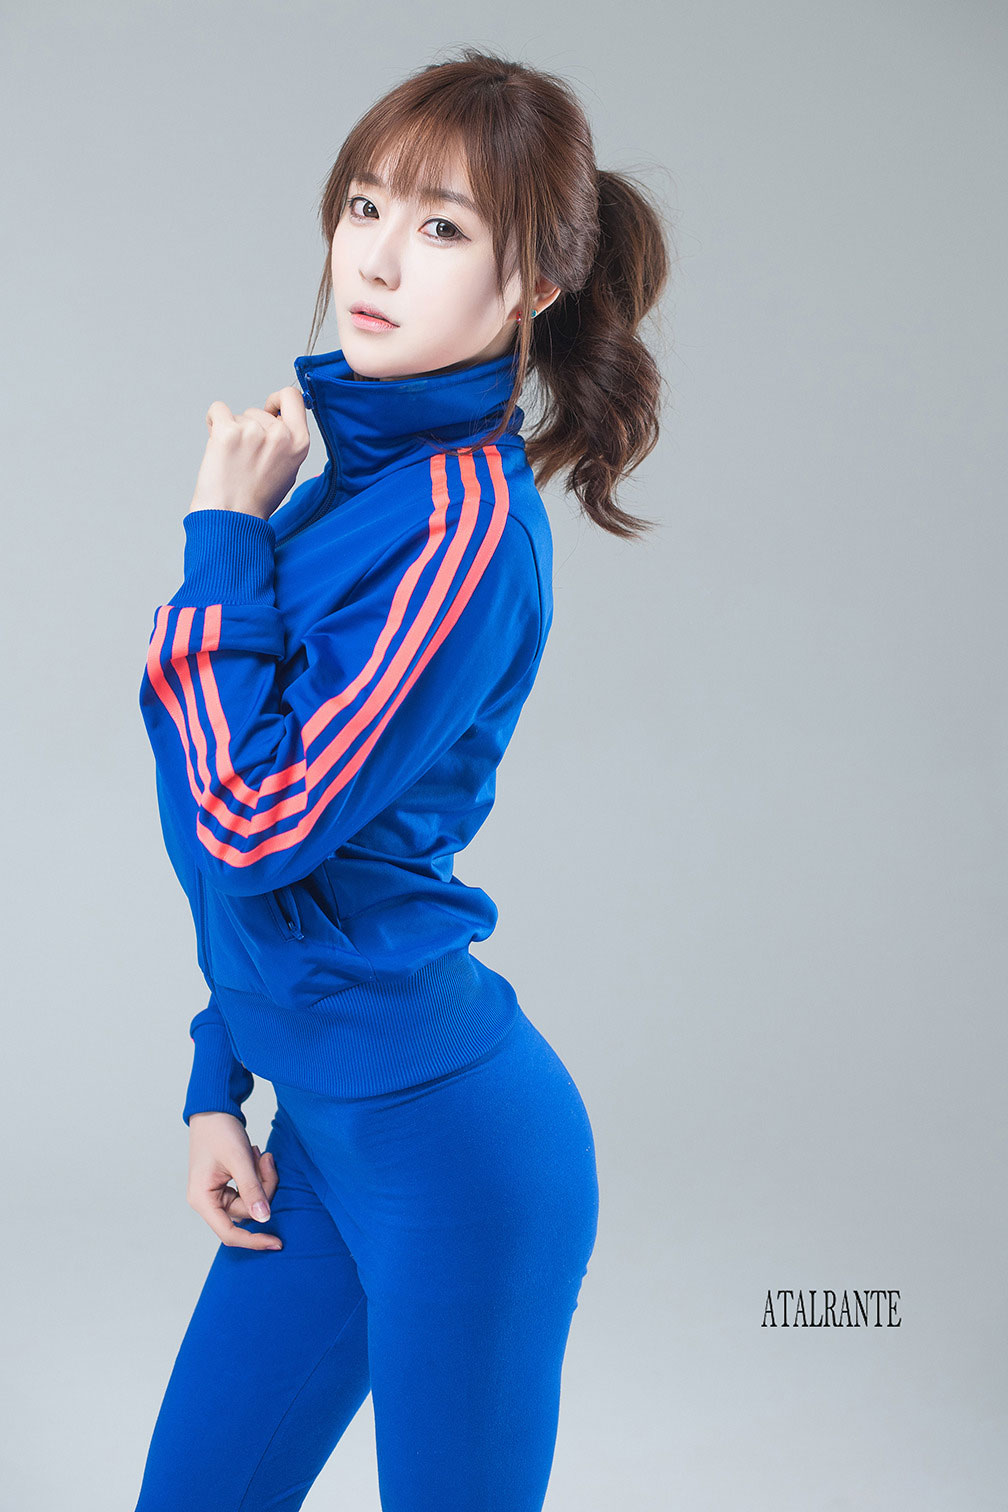 Korean model Choi Seul Gi studio